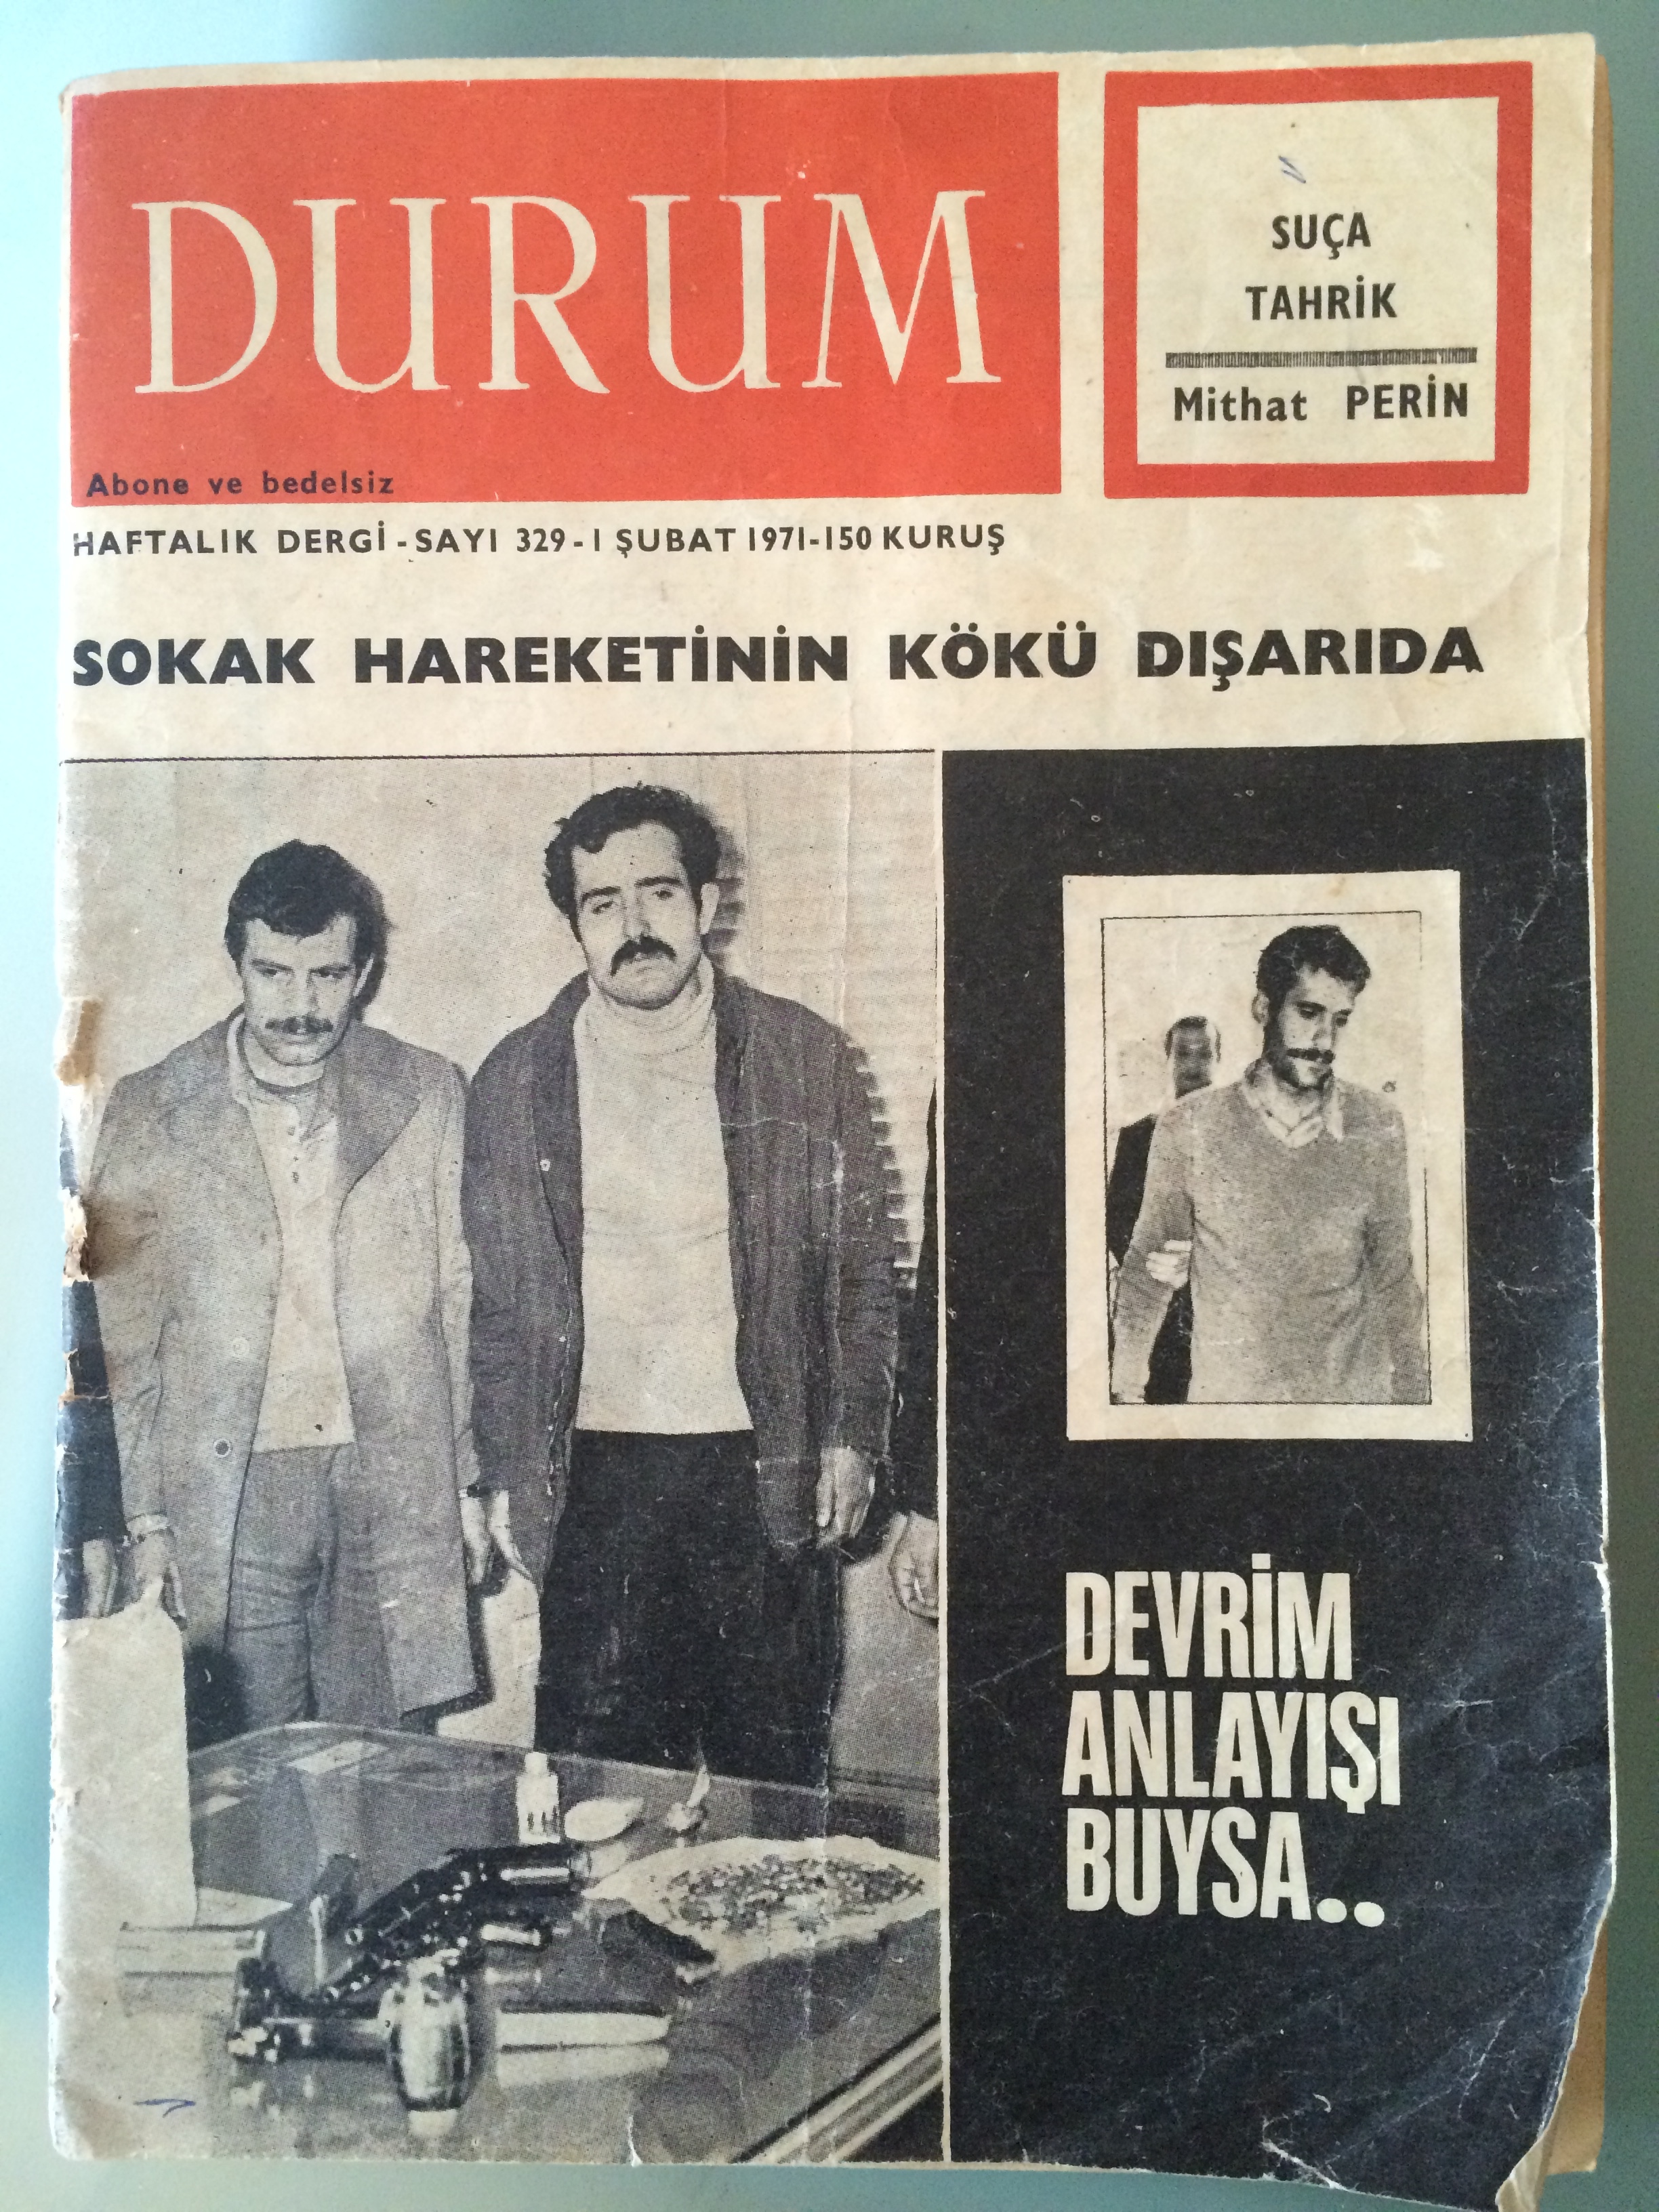 1 Şubat 1971 tarihli Durum dergisinin kapağında Mustafa Kaçaroğlu ve Mahir Sayan, siyah zemin üstündeki fotoğraf Deniz Gezmiş'e ait 